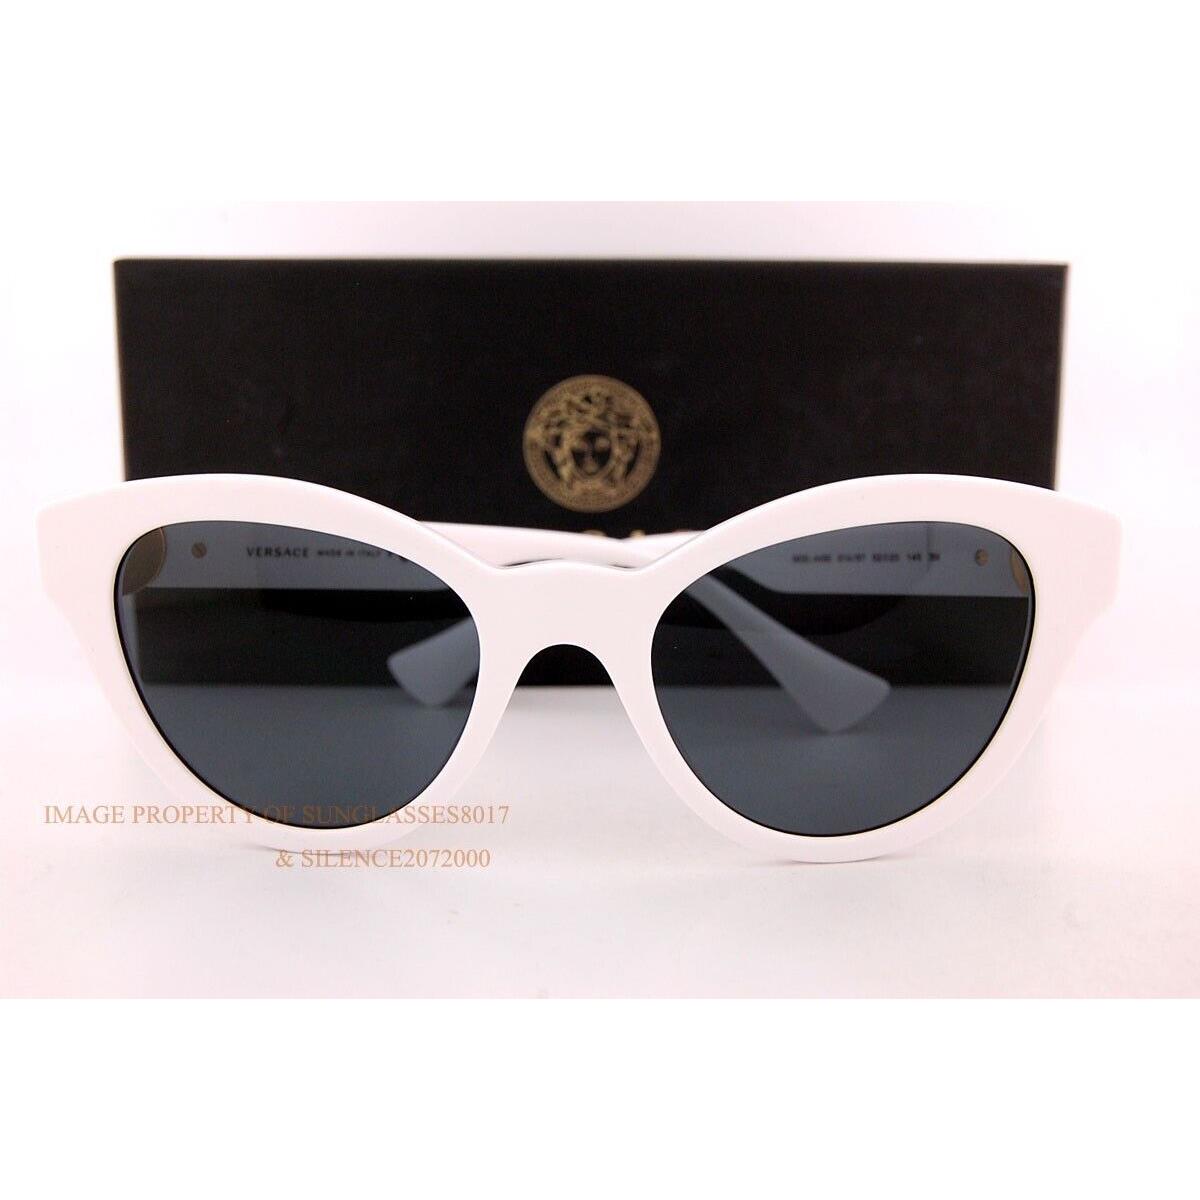 Versace Sunglasses VE 4435 314/87 White/dark Gray For Women - Frame: White, Lens: Gray